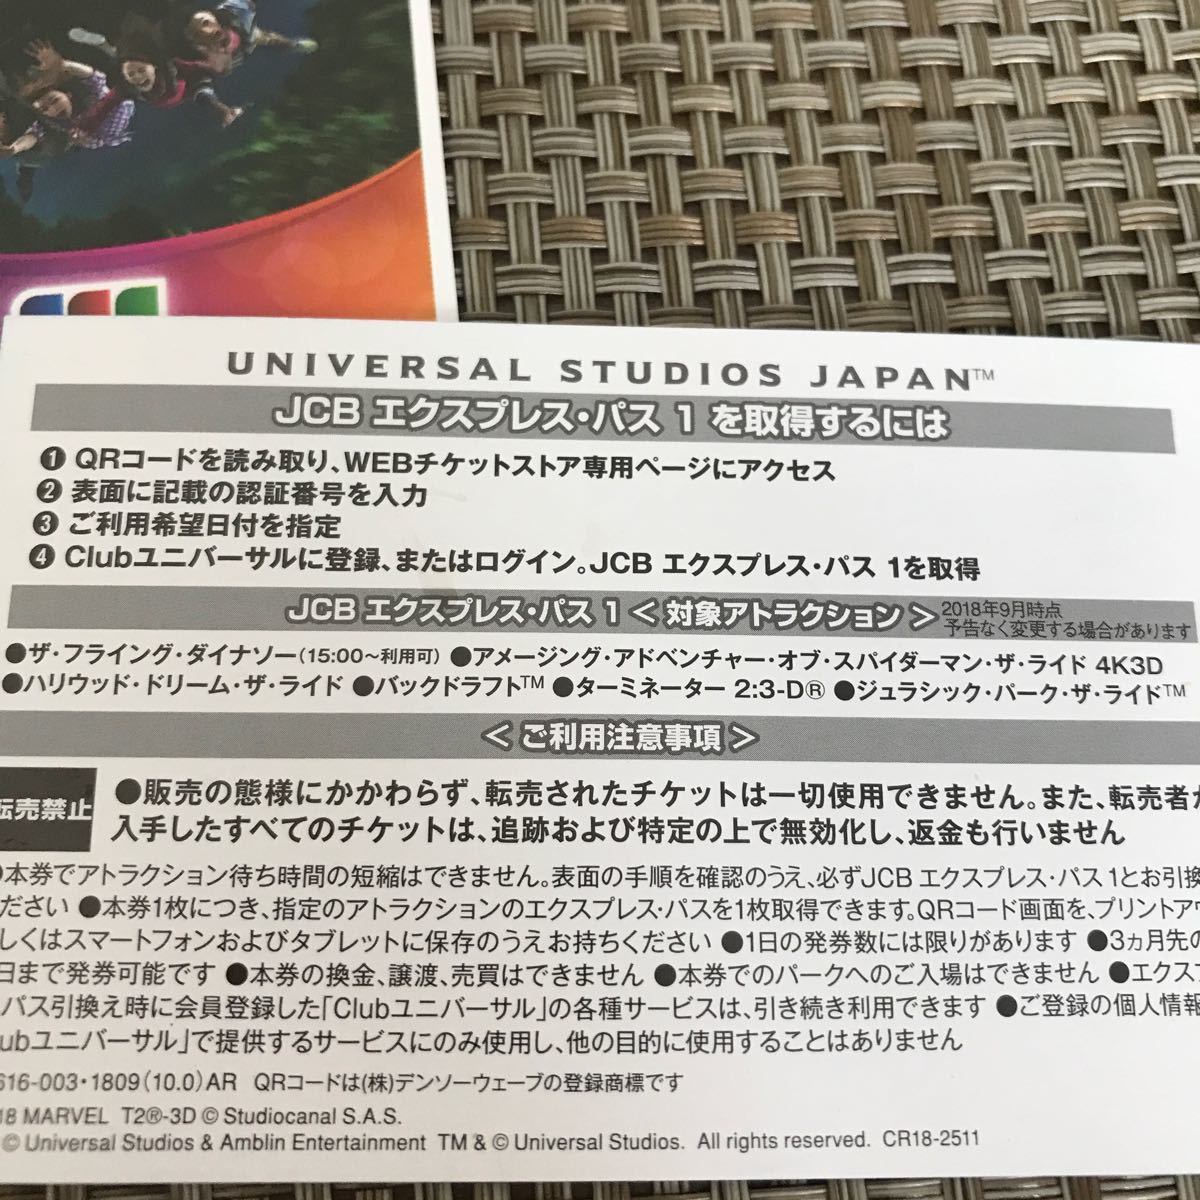 ユニバーサルスタジオジャパン USJ チケット 大人2枚 JCB エクスプレス 